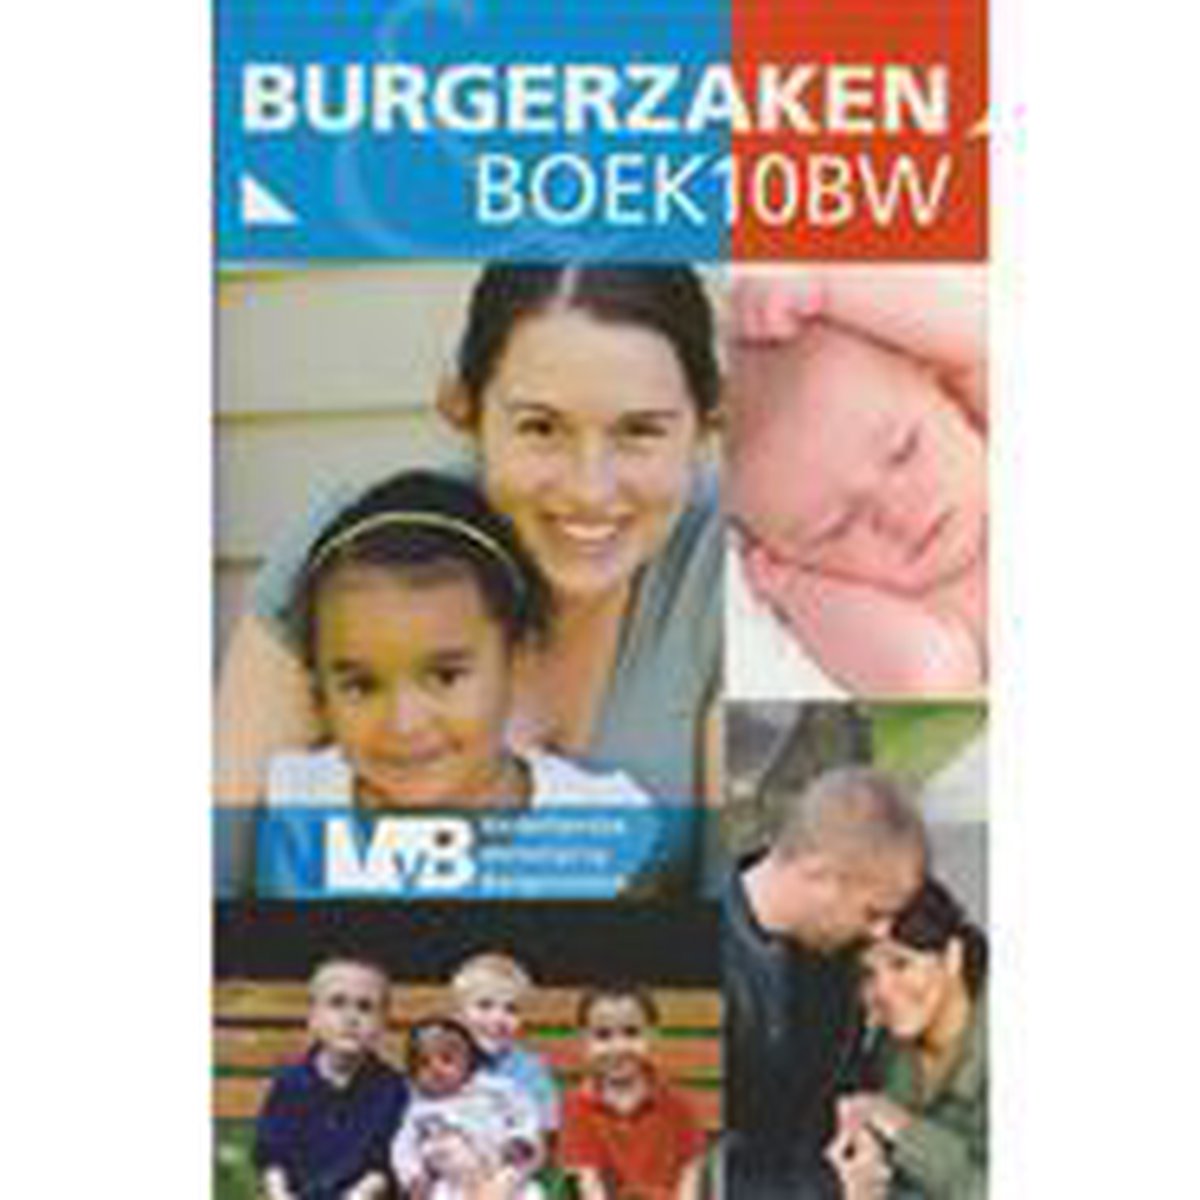 Burgerzaken & Boek 10 BW